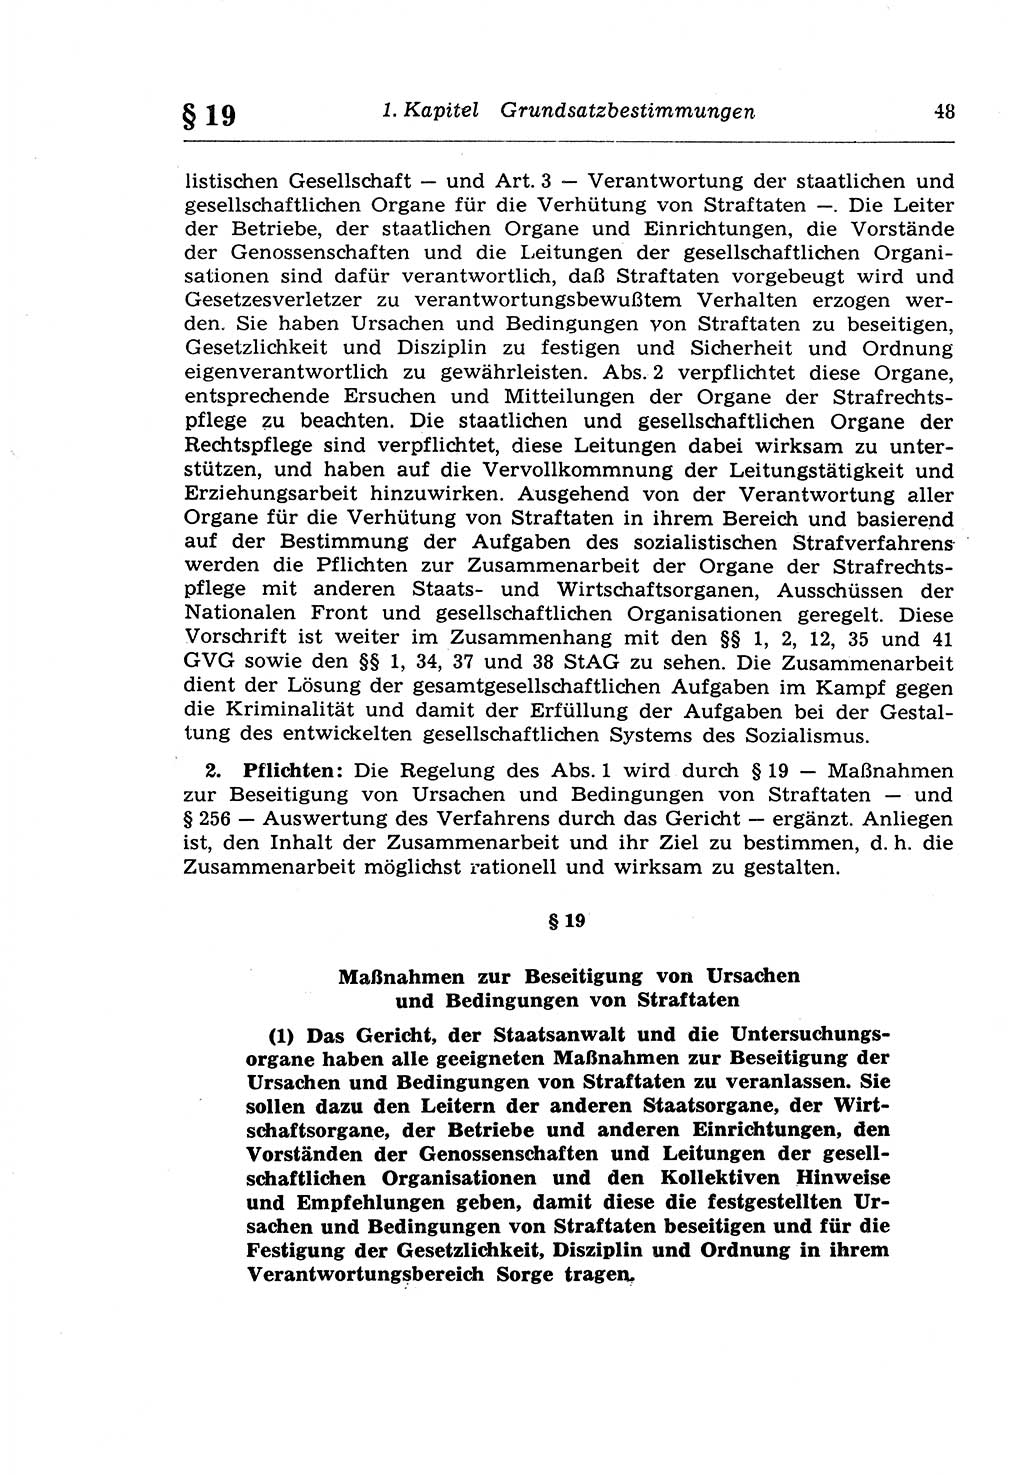 Strafprozeßrecht der DDR (Deutsche Demokratische Republik), Lehrkommentar zur Strafprozeßordnung (StPO) 1968, Seite 48 (Strafprozeßr. DDR Lehrkomm. StPO 19688, S. 48)